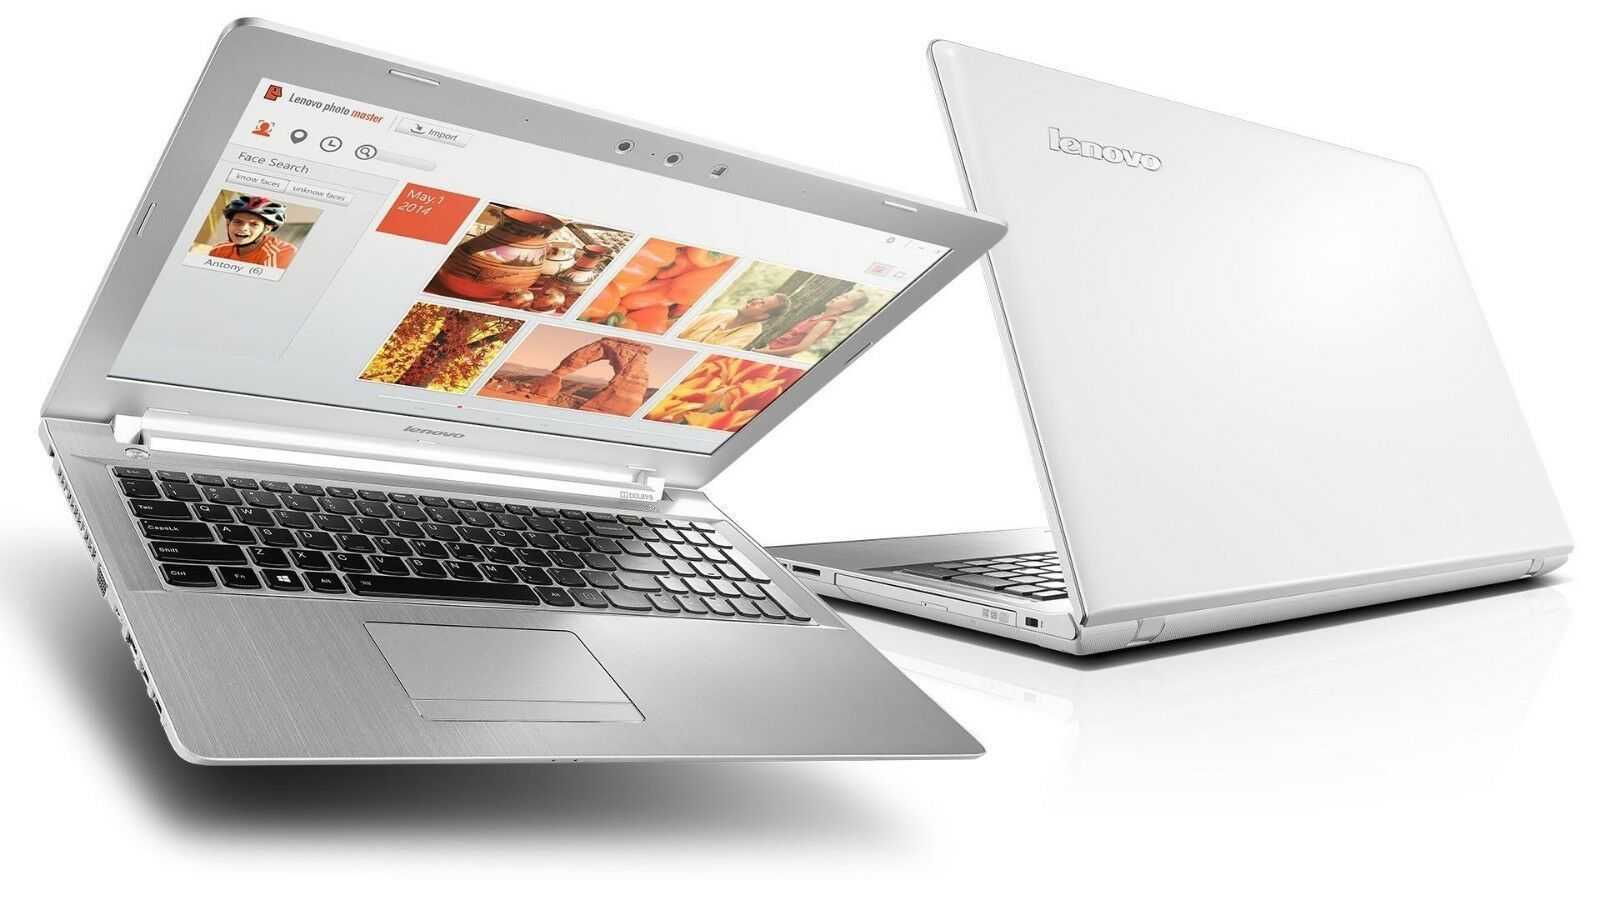 Ноутбук lenovo z50-70 — купить, цена и характеристики, отзывы